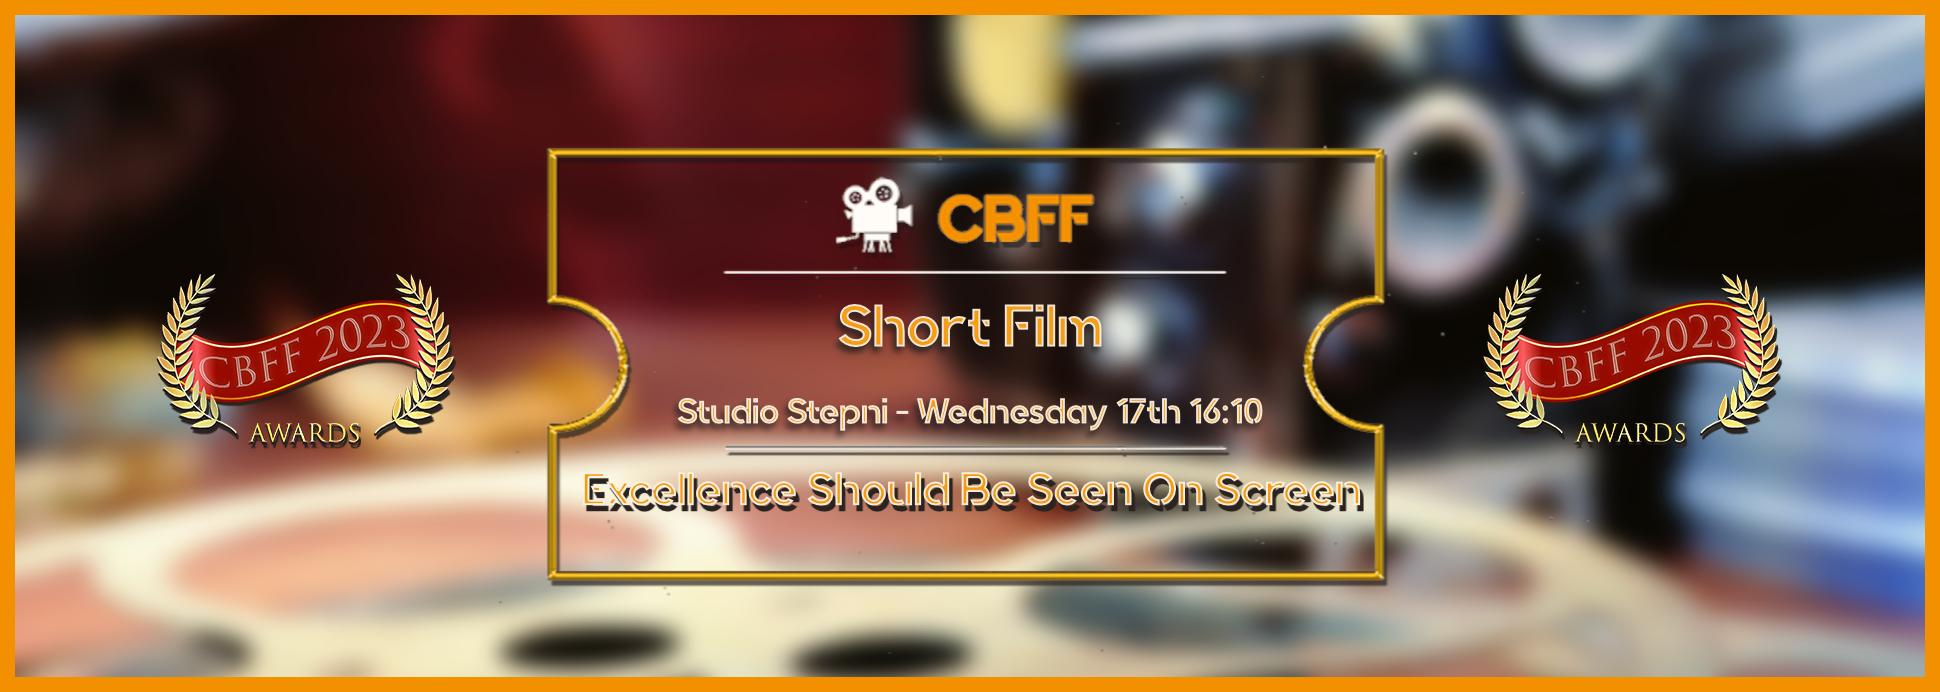 Studio Stepni - Short Film 17th 16:10